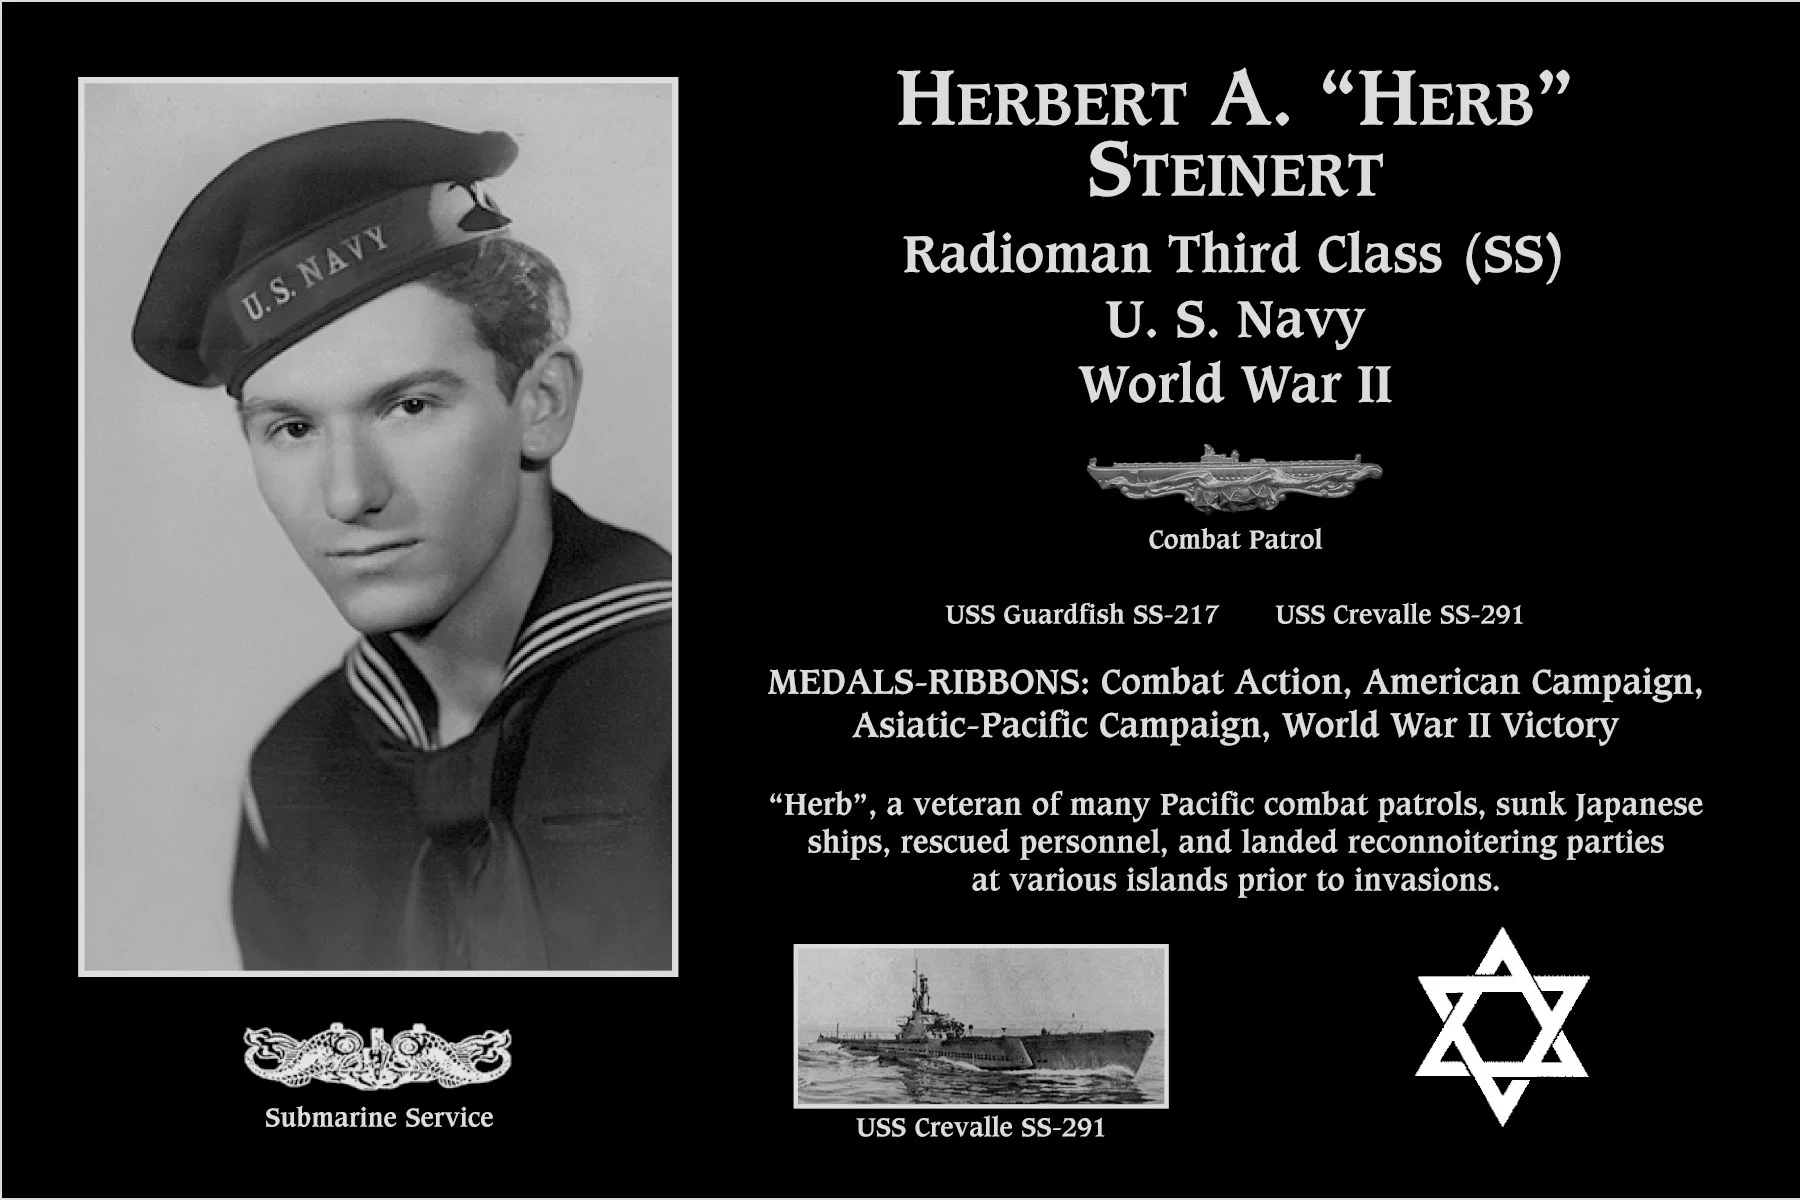 Herbert A “Herb” Steinert